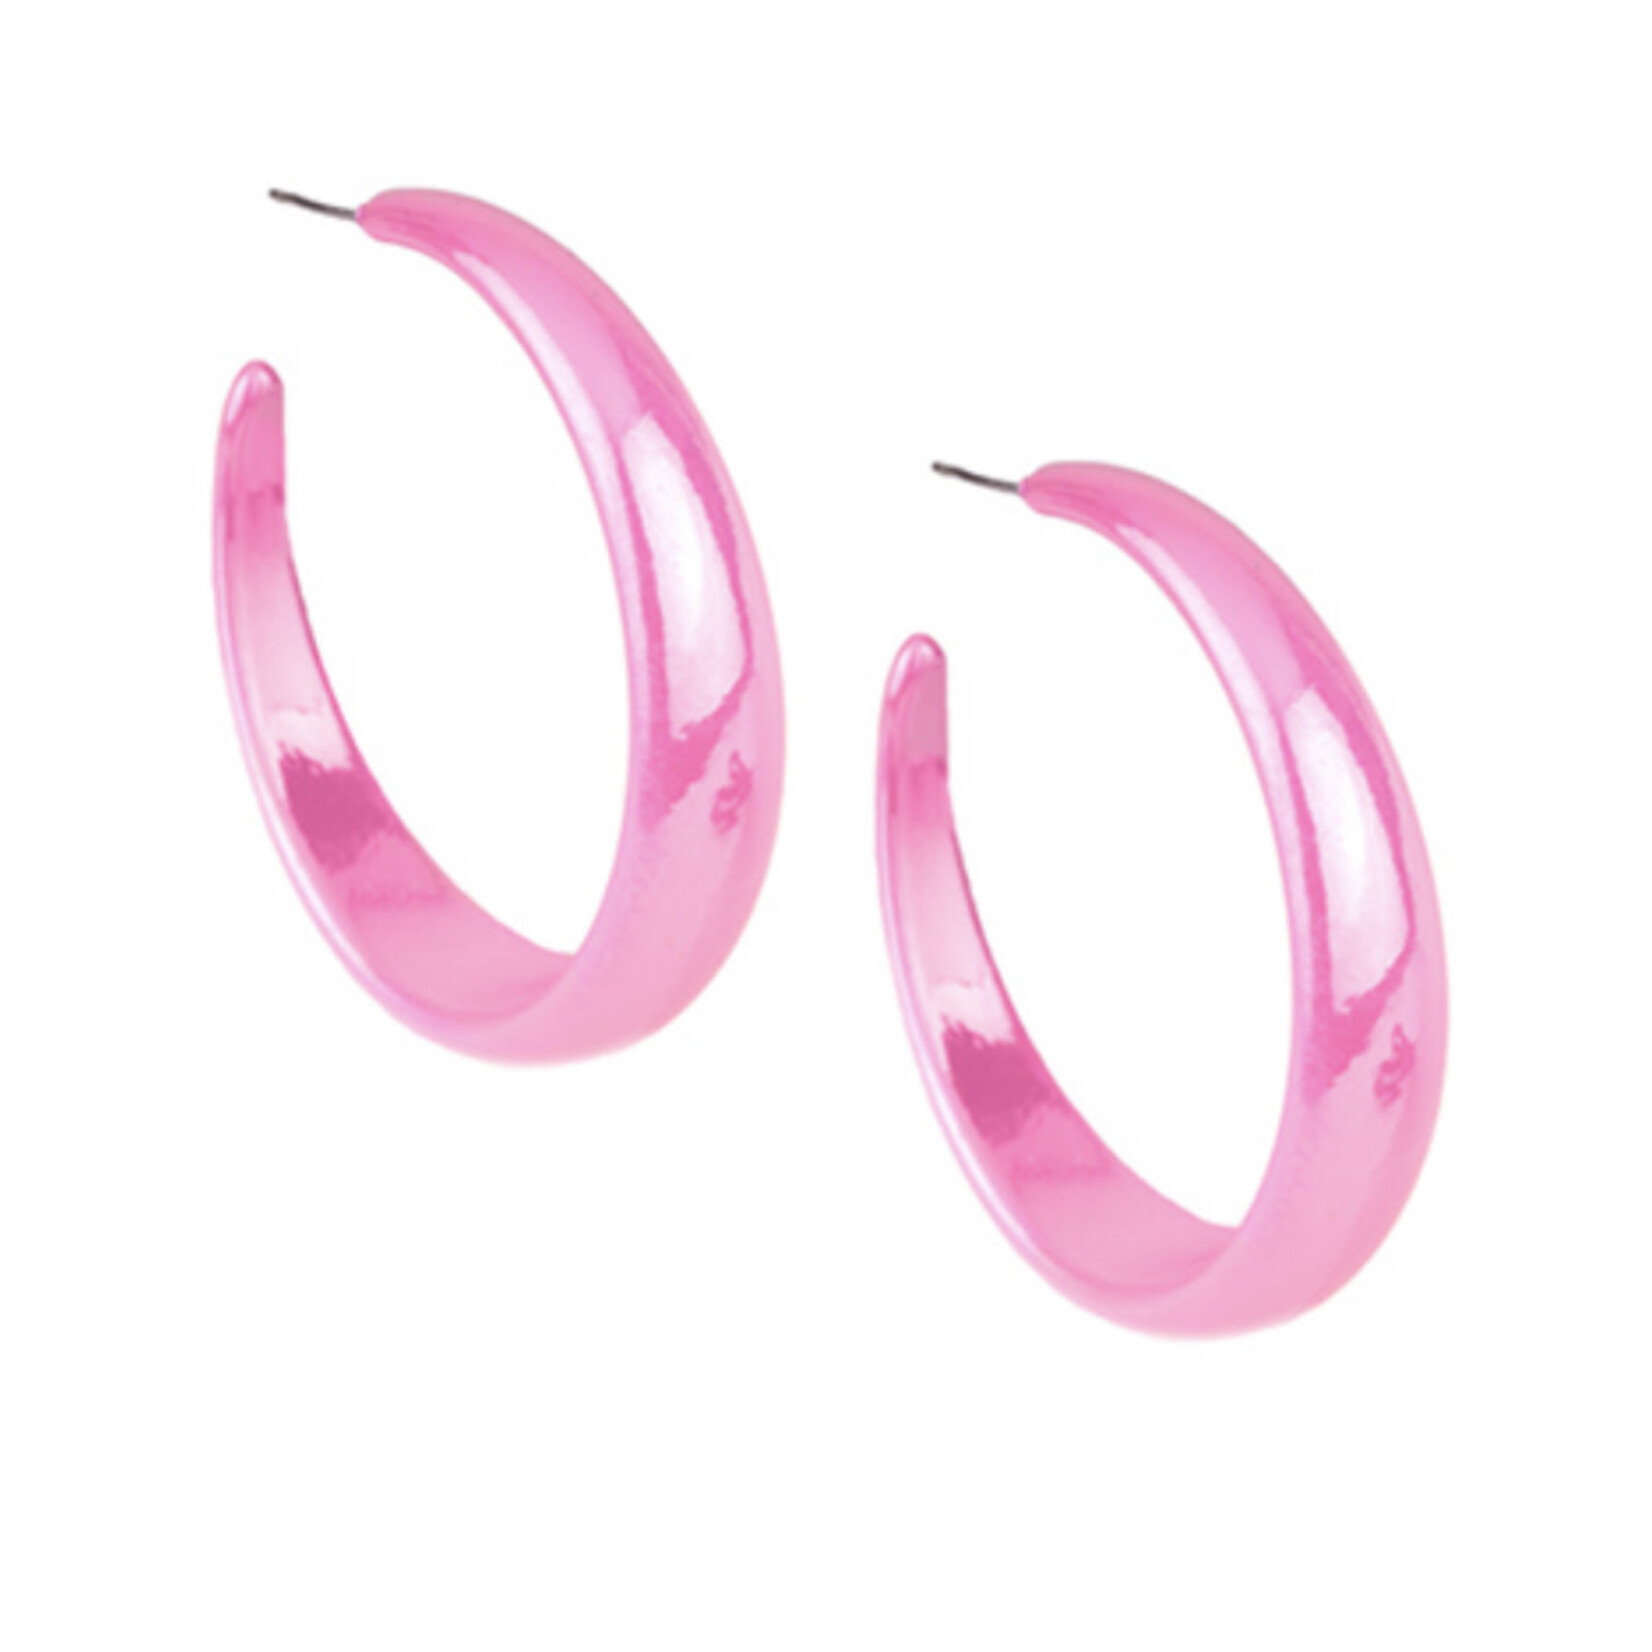 Pink Acrylic Hoops